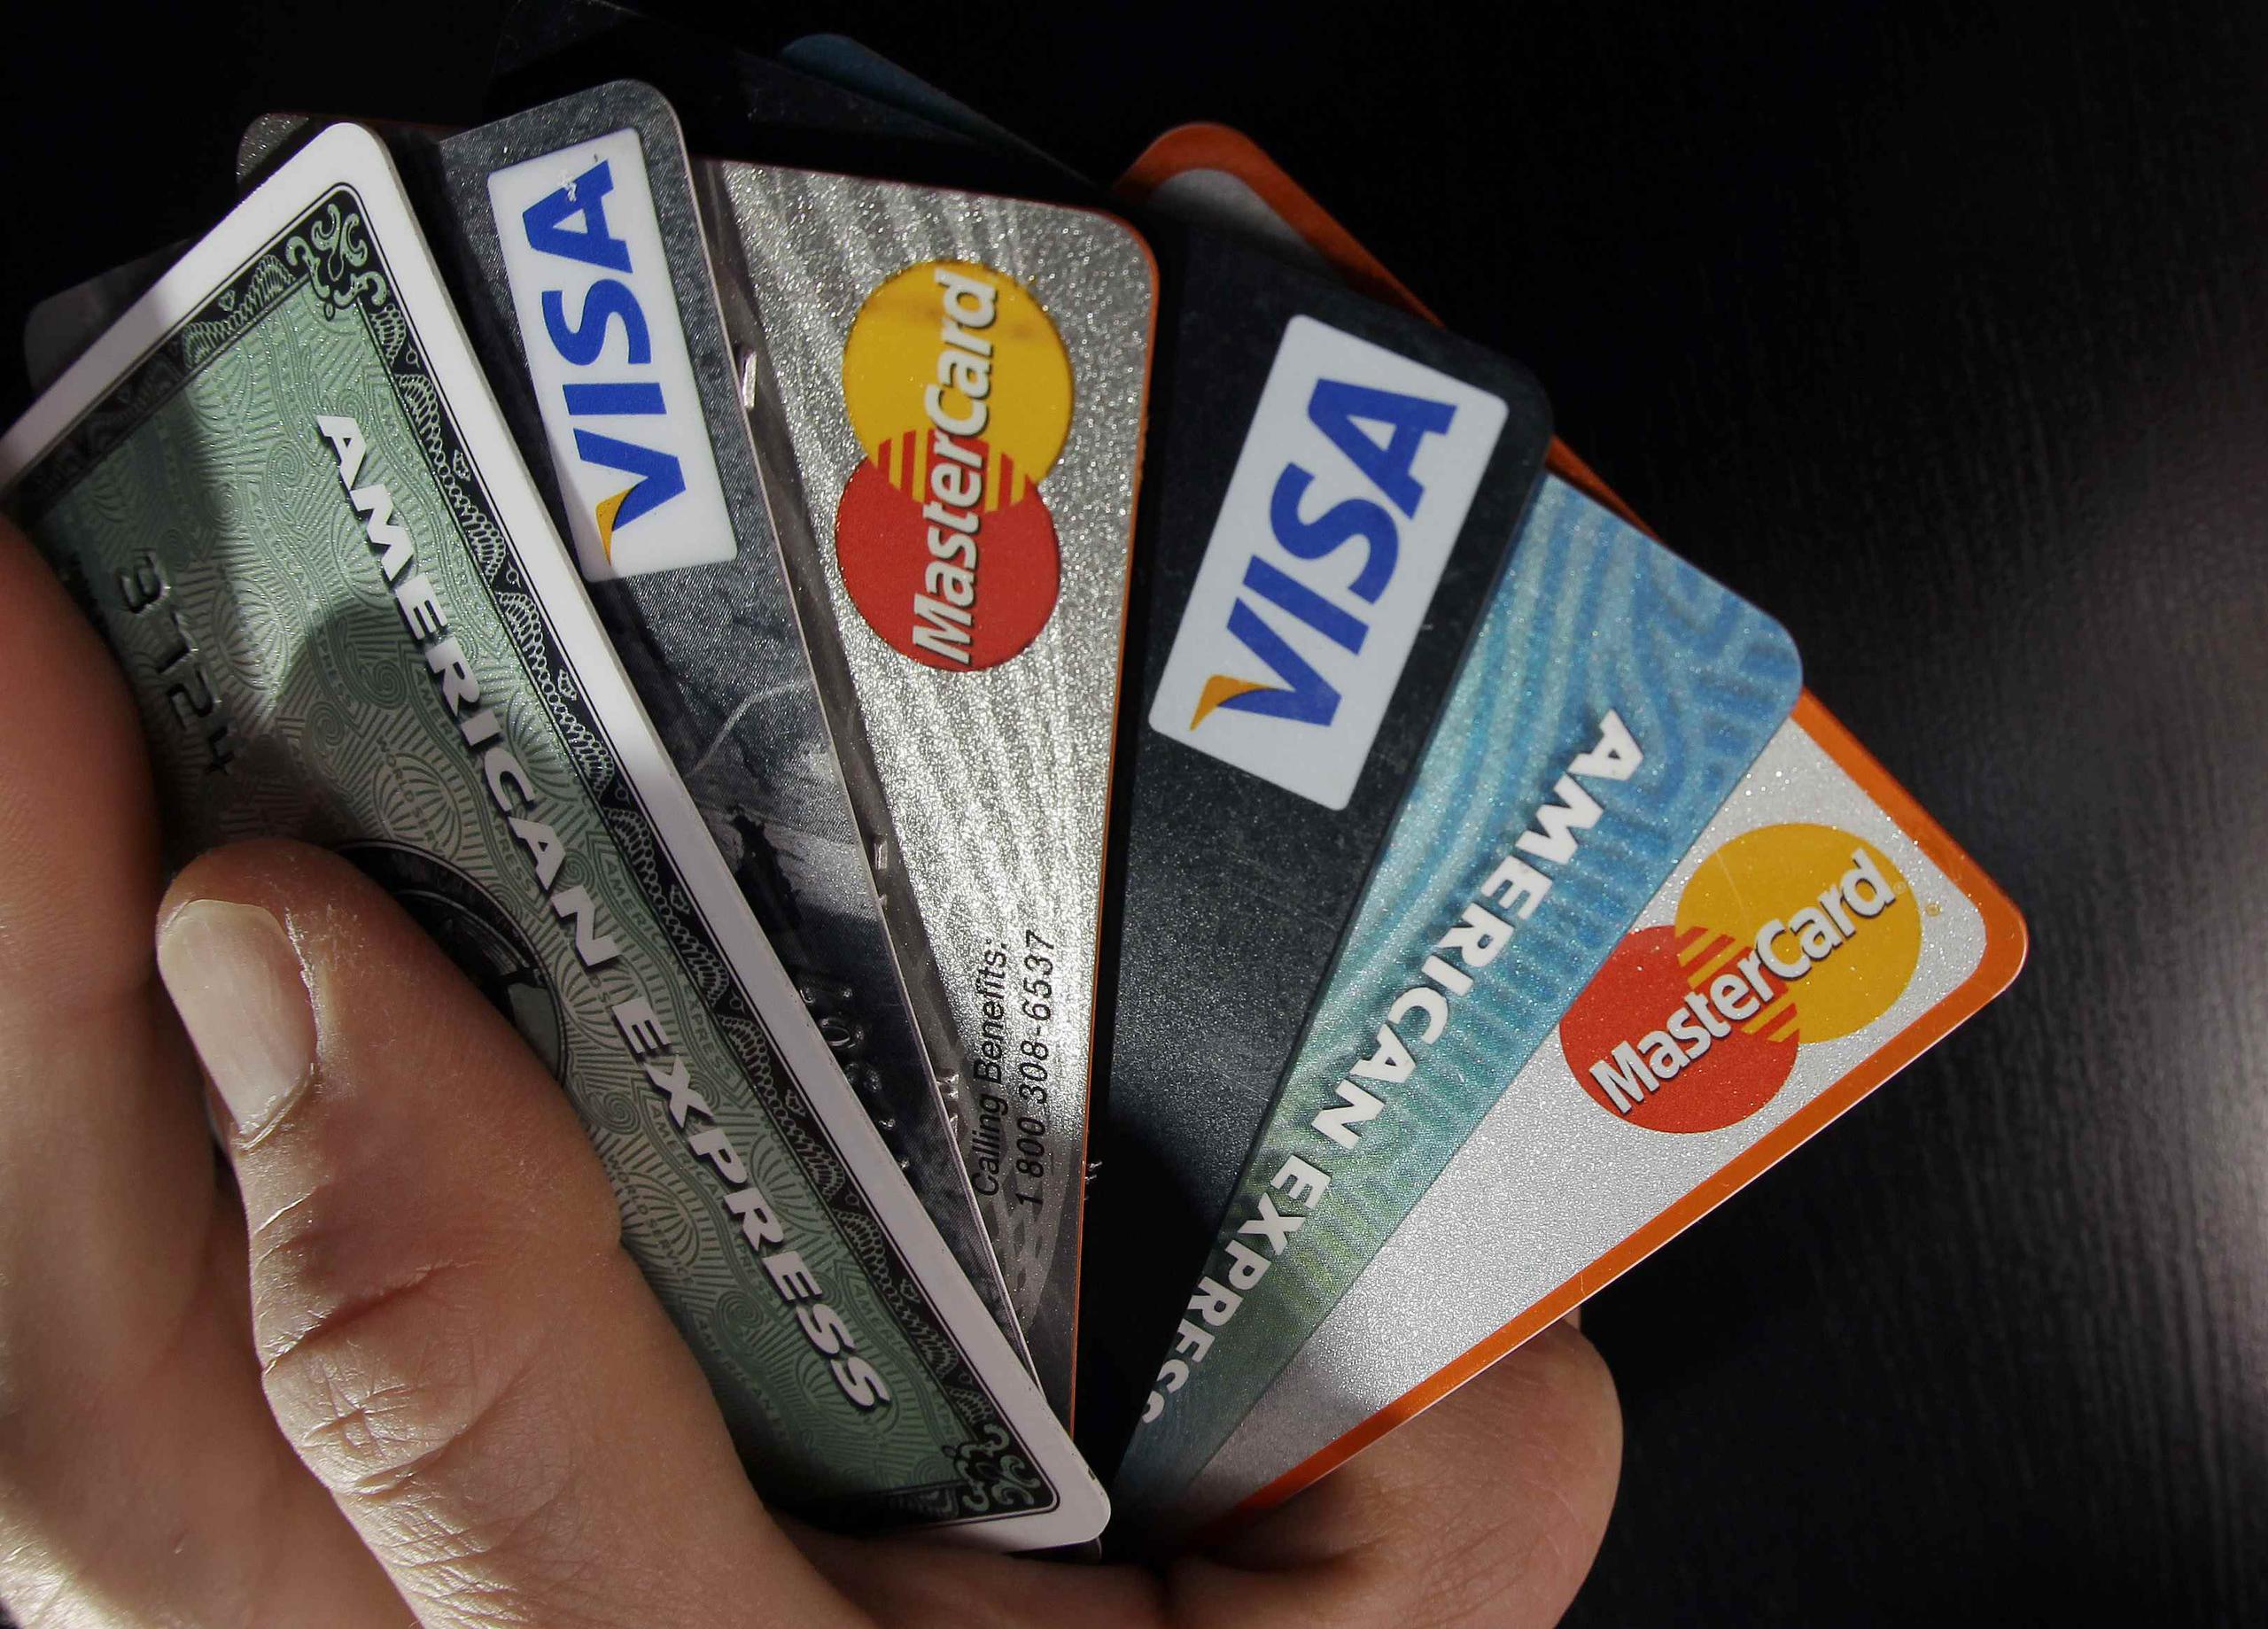 Las redes de tarjetas de crédito comenzaron a promocionar hace años tarjetas con chip como protección contra falsificaciones. A fines del año pasado, sólo un 20% de las terminales habían sido activadas para procesarlas. (AP / Archivo)